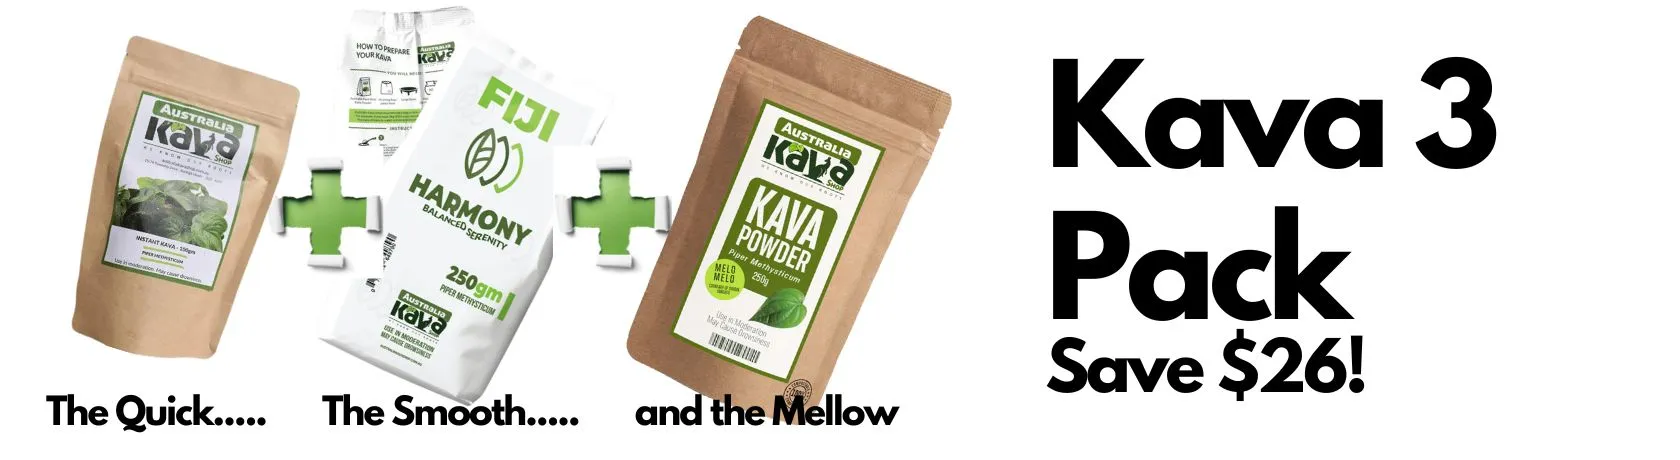 Kava 3 Pack - Australia Kava Shop